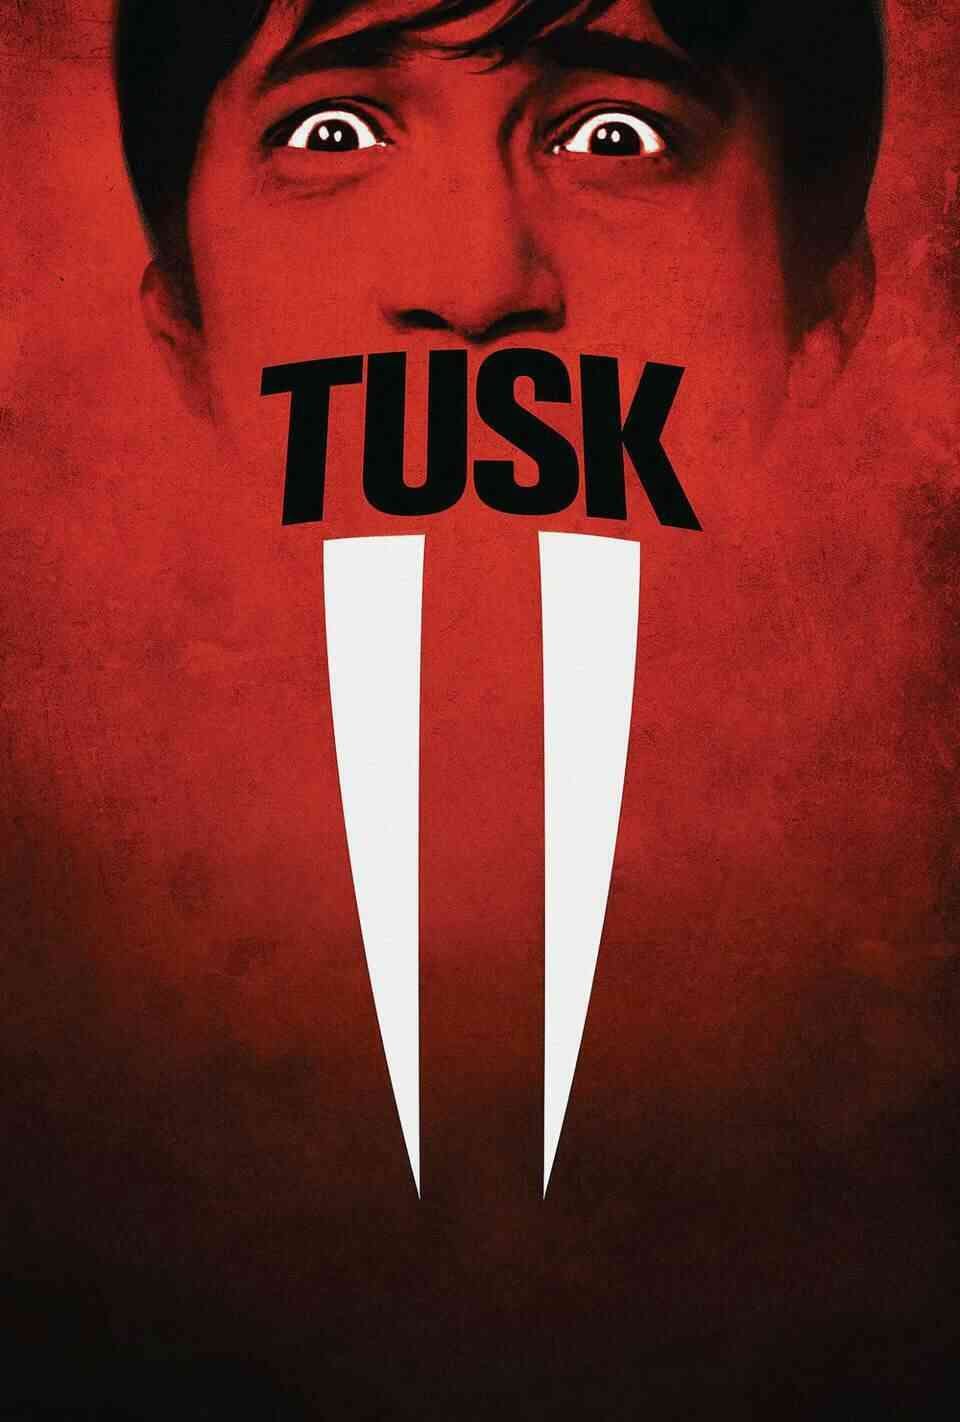 Read Tusk screenplay.